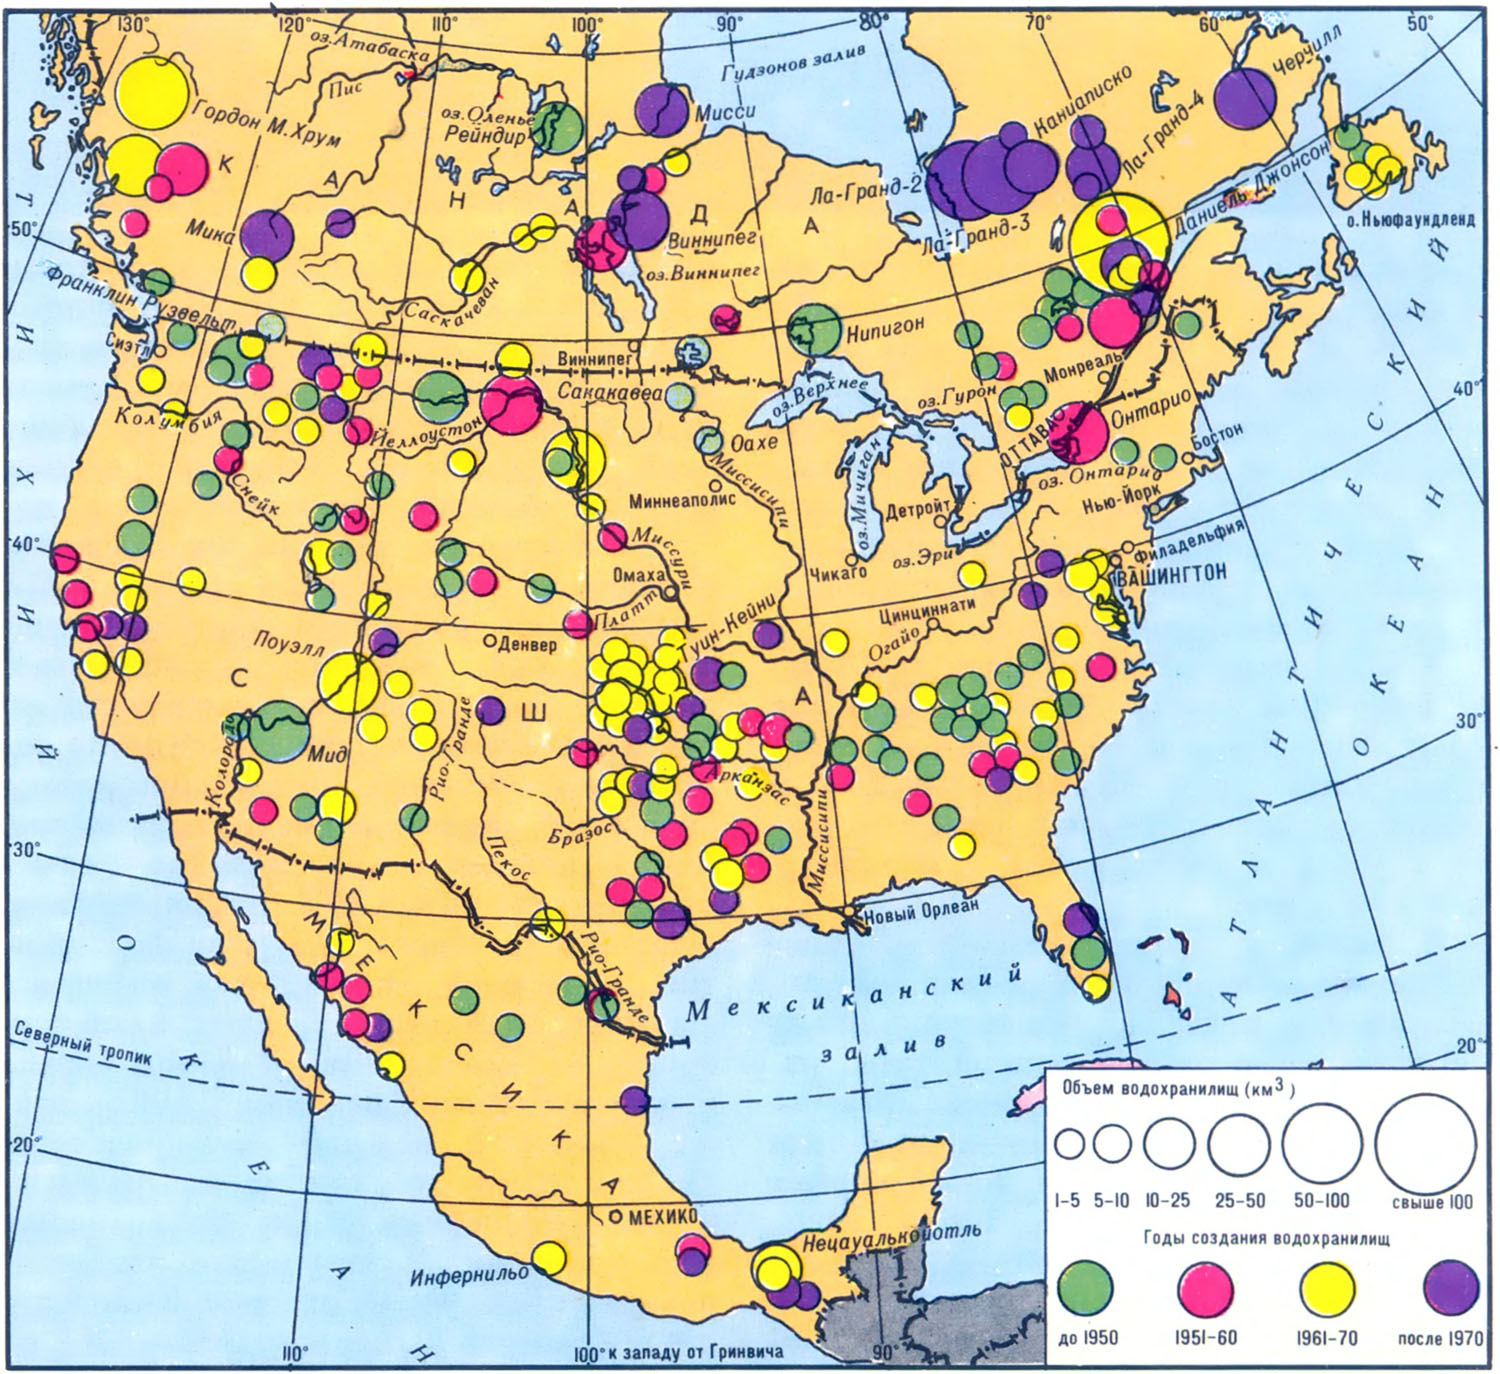 Полезные ископаемые стран северной америки. Карта промышленности Северной Америки. Основные полезные ископаемые США на карте. Карта полезных ископаемых США И Канады. Полезные ископаемые Северной Америки на карте.